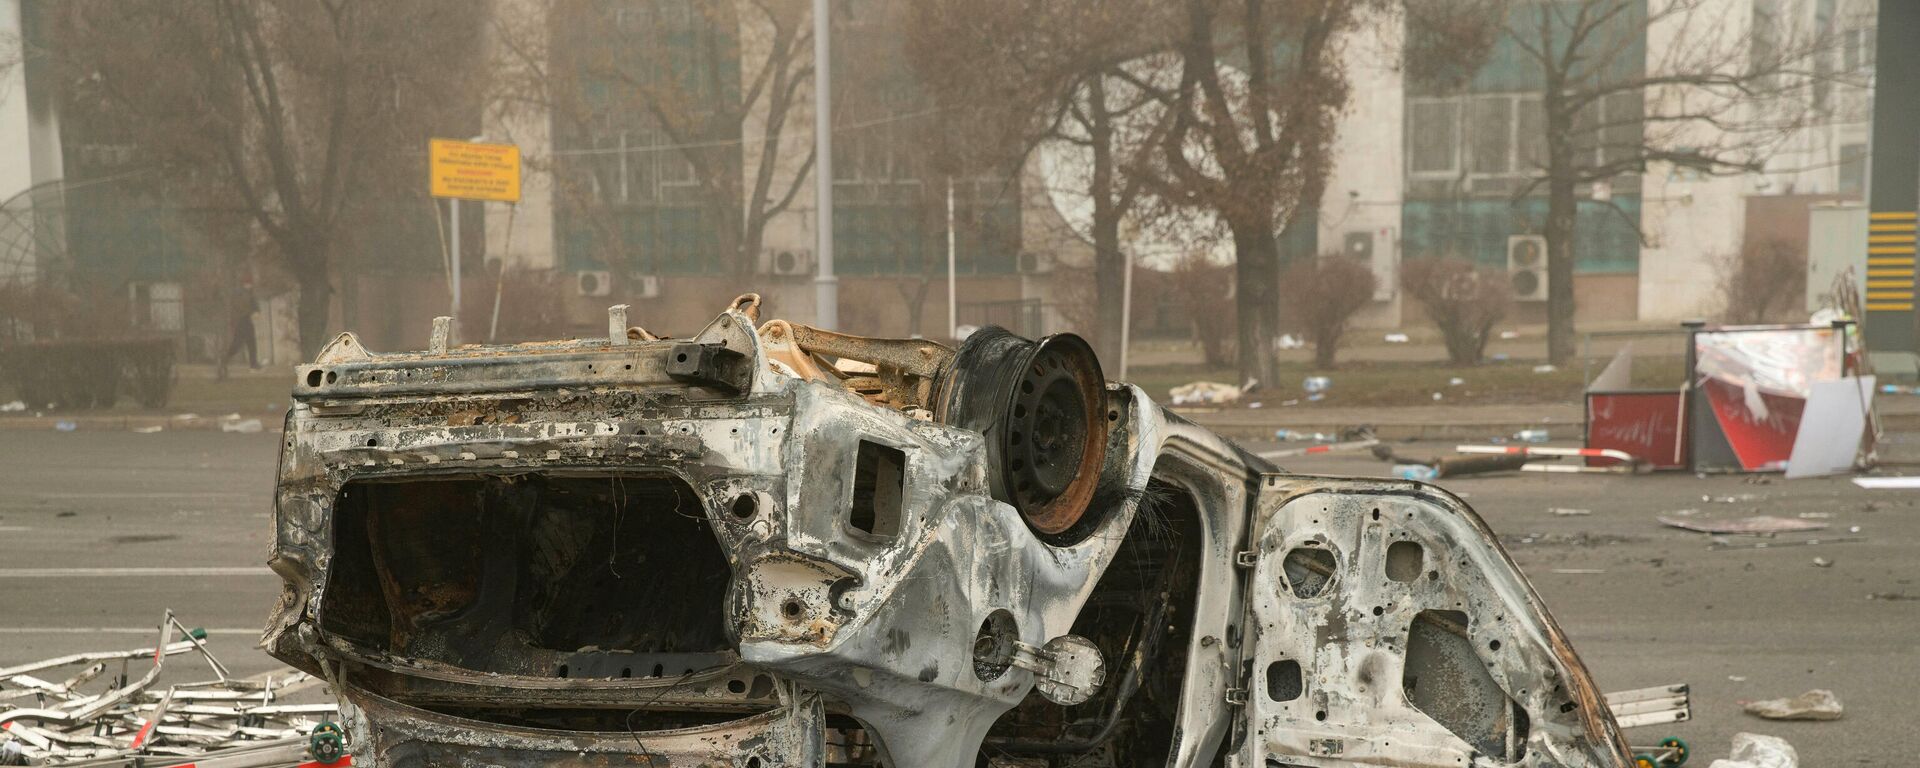 Сгоревший автомобиль в центре Алматы 6 января 2022 года - Sputnik Беларусь, 1920, 07.01.2022